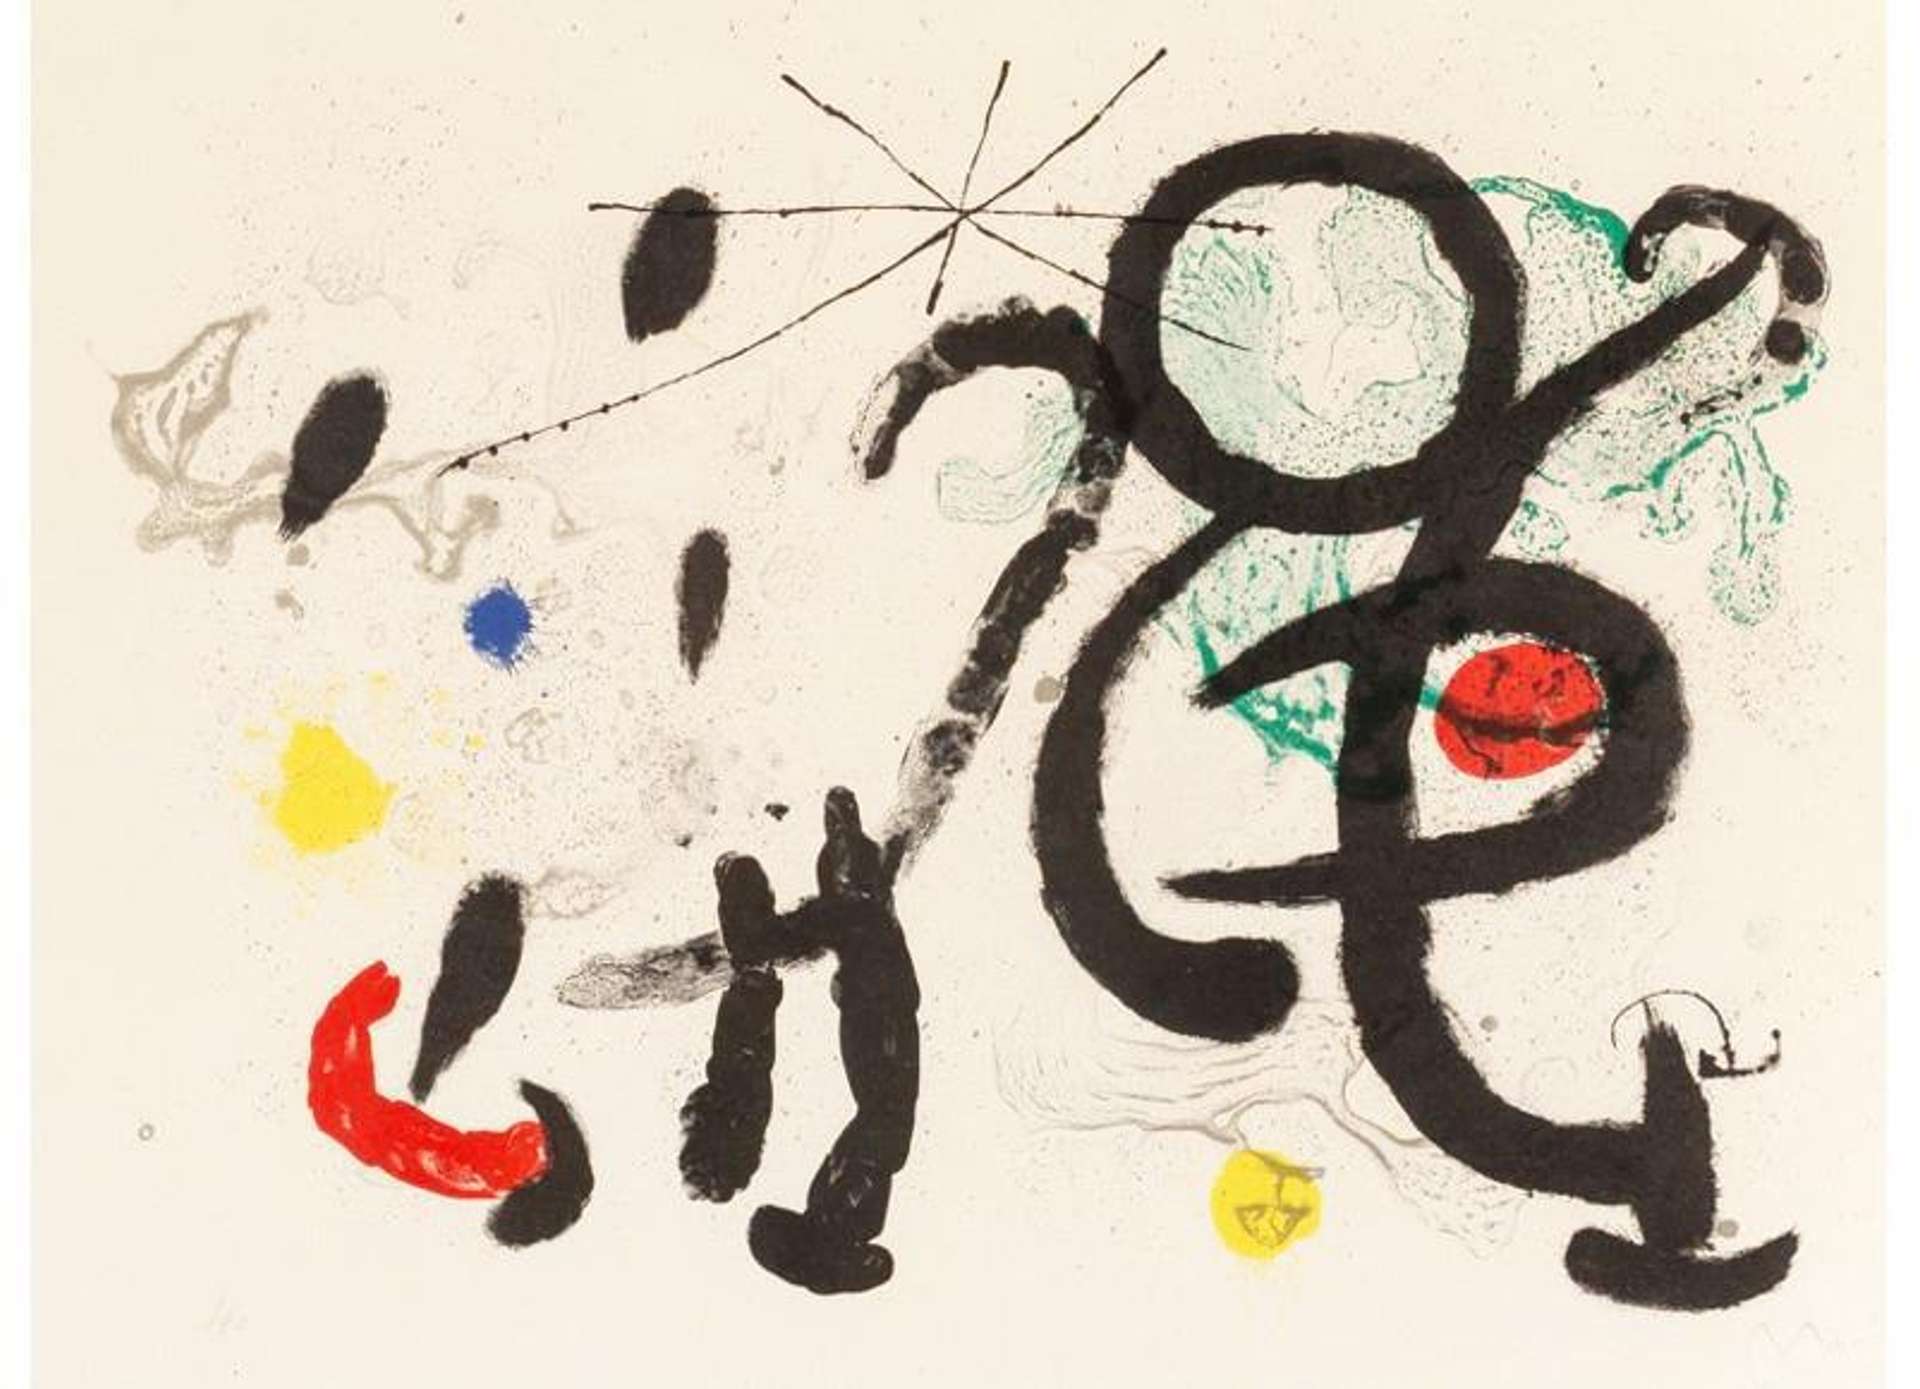 Danse Barbare - Signed Print by Joan Miró 1963 - MyArtBroker